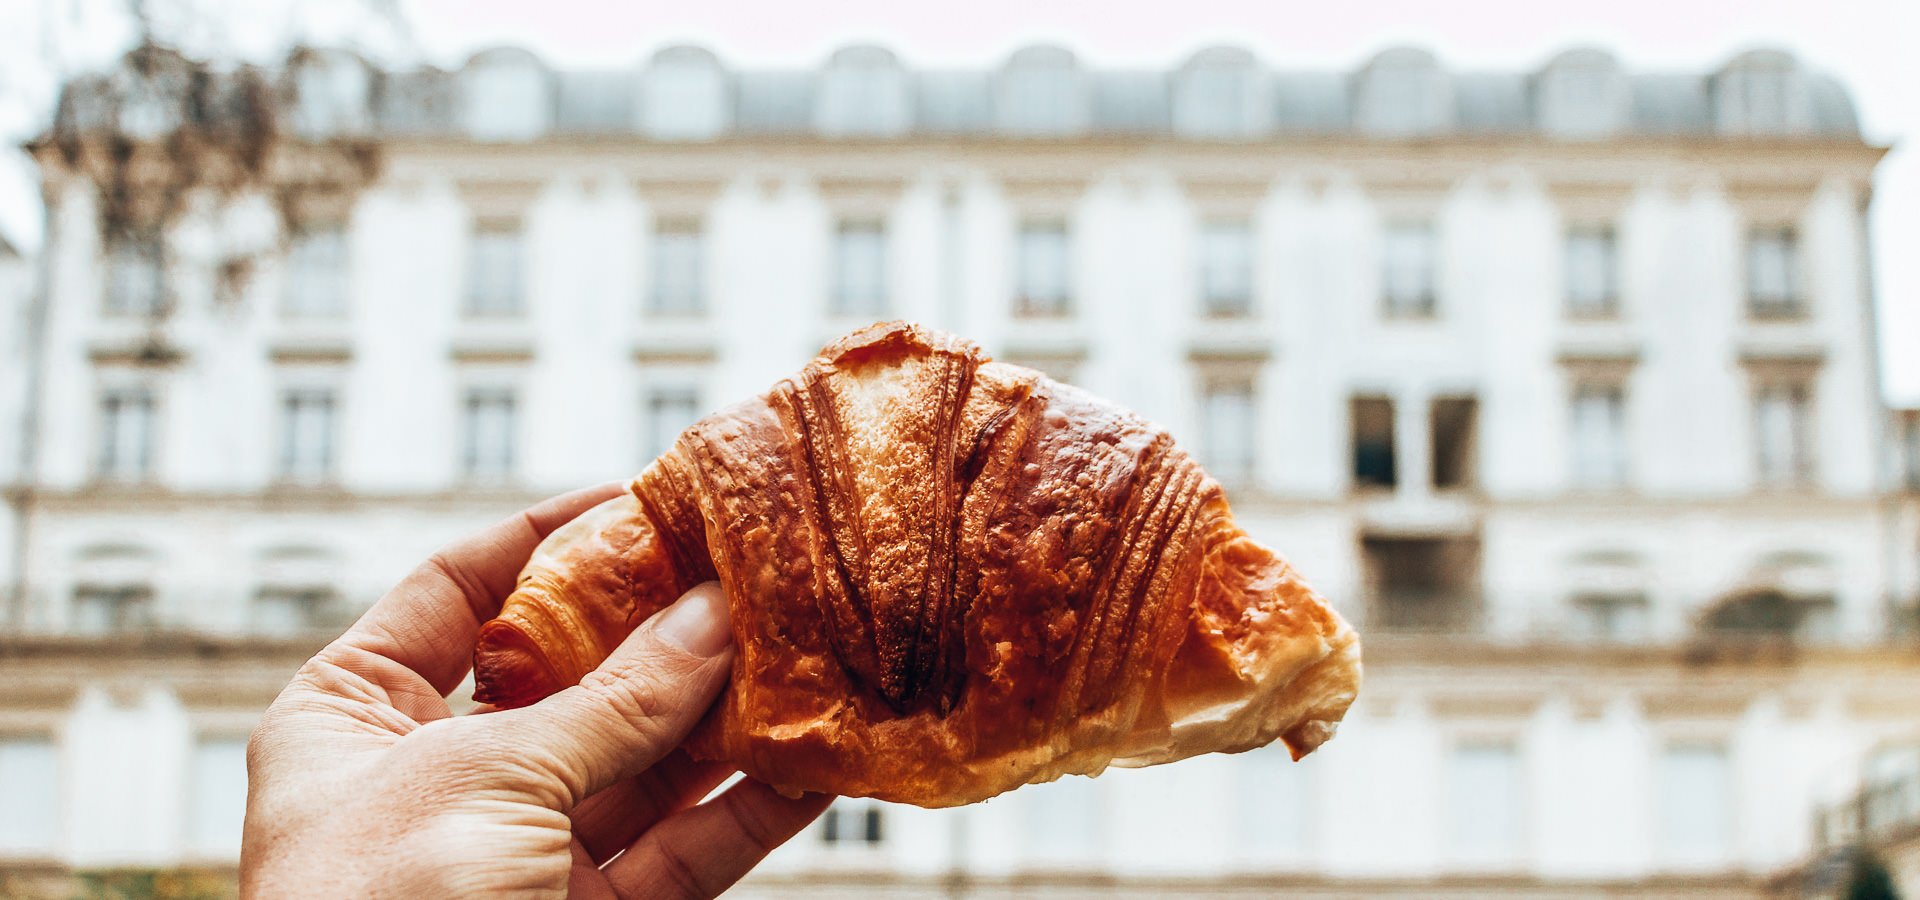 The 20 best pâtisseries in Paris